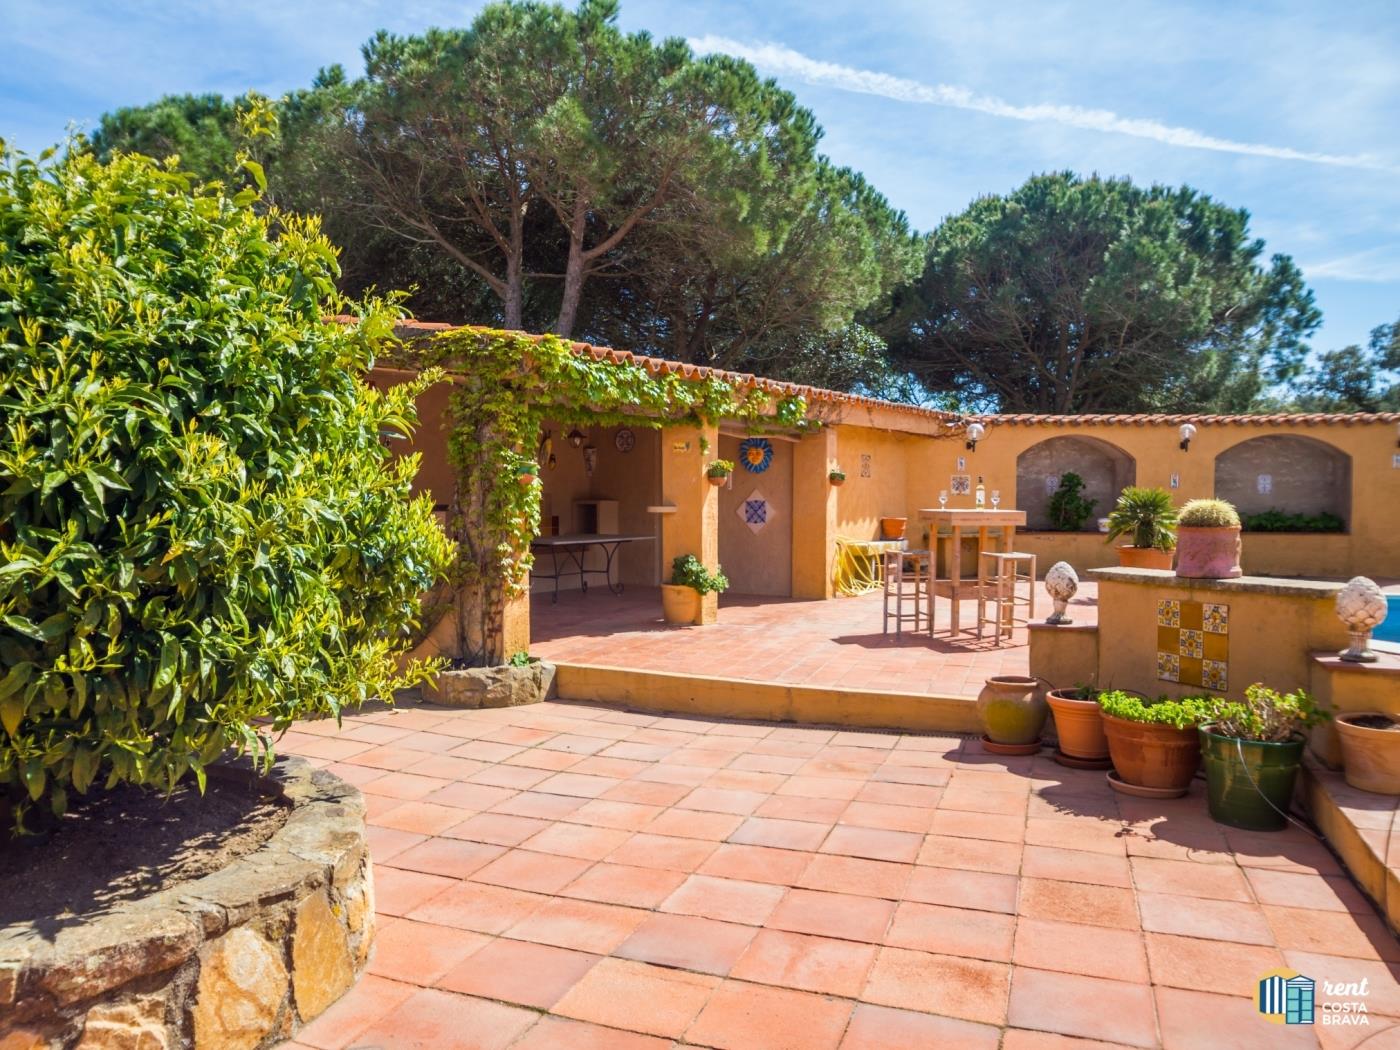 Villa Violeta espaiosa casa de poble amb piscina a Castell-Platja d'Aro